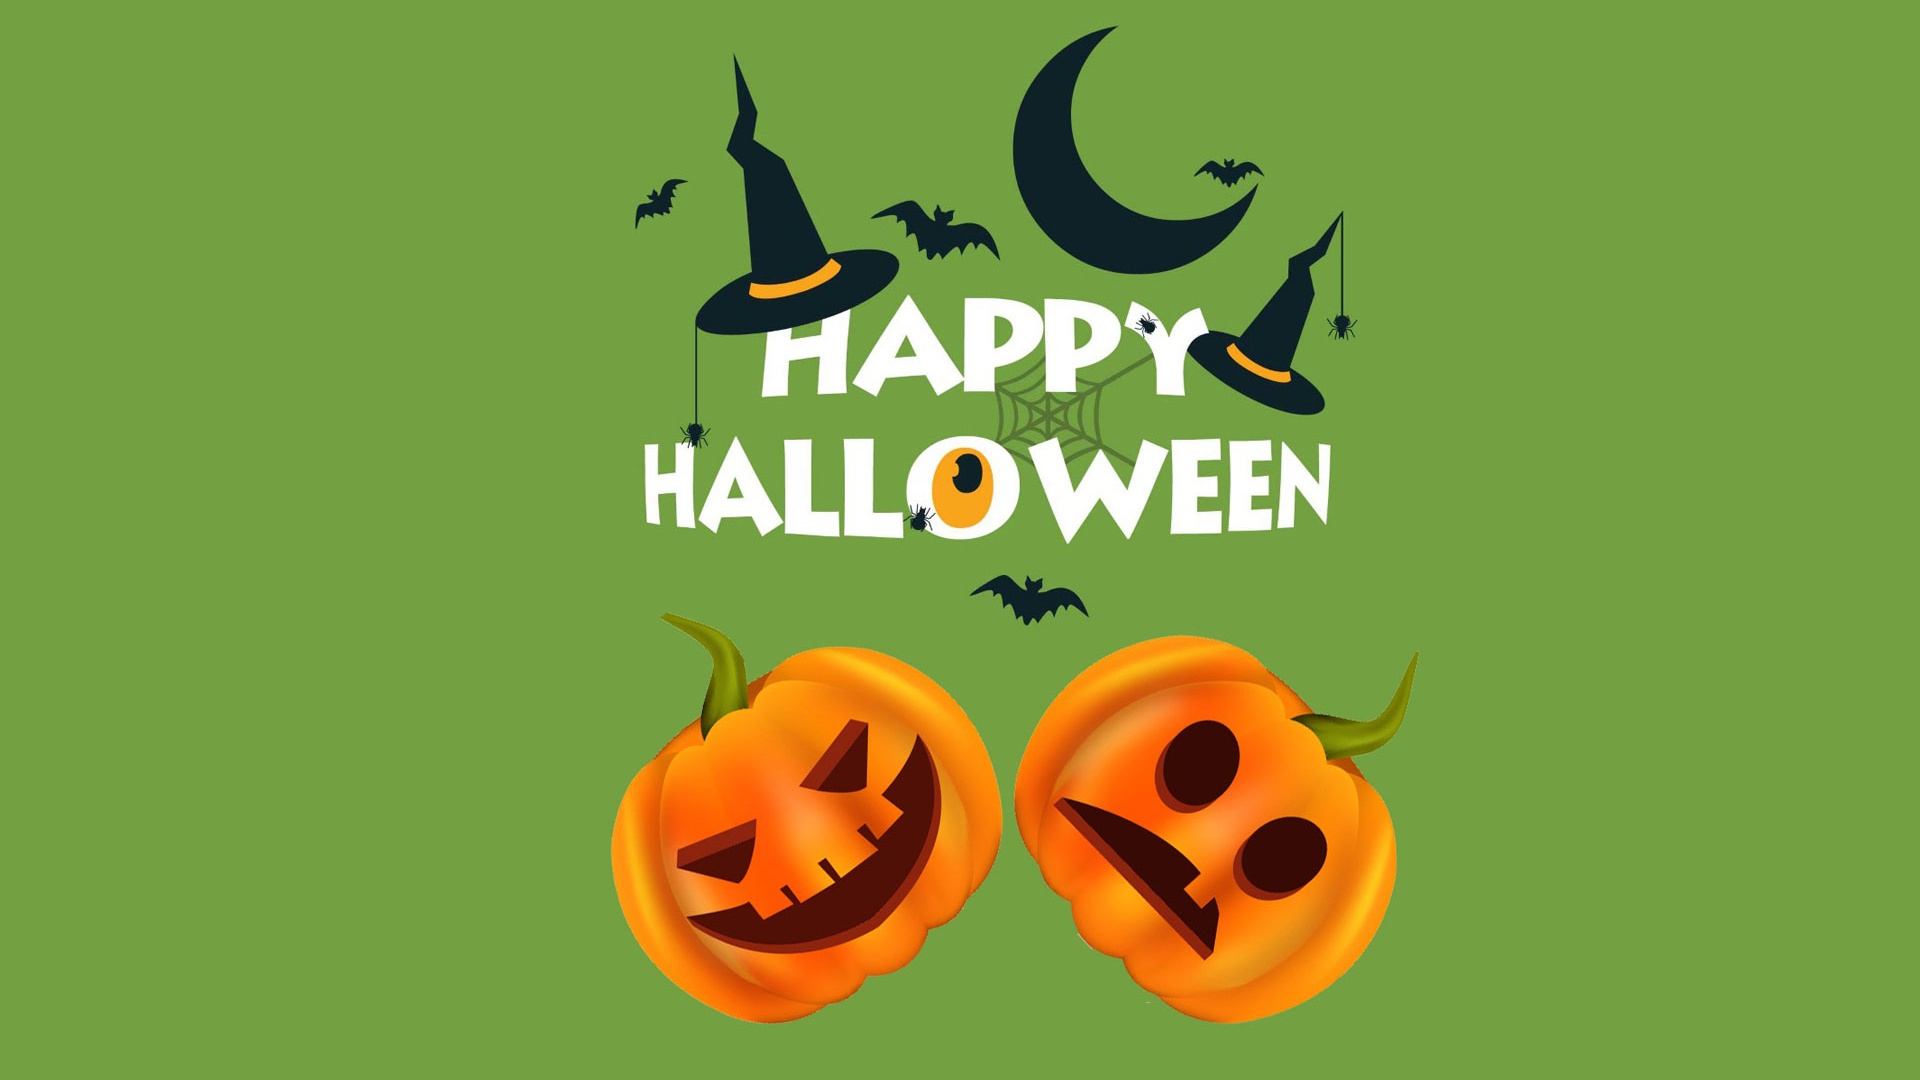 Happy Halloween desktop wallpaper free download